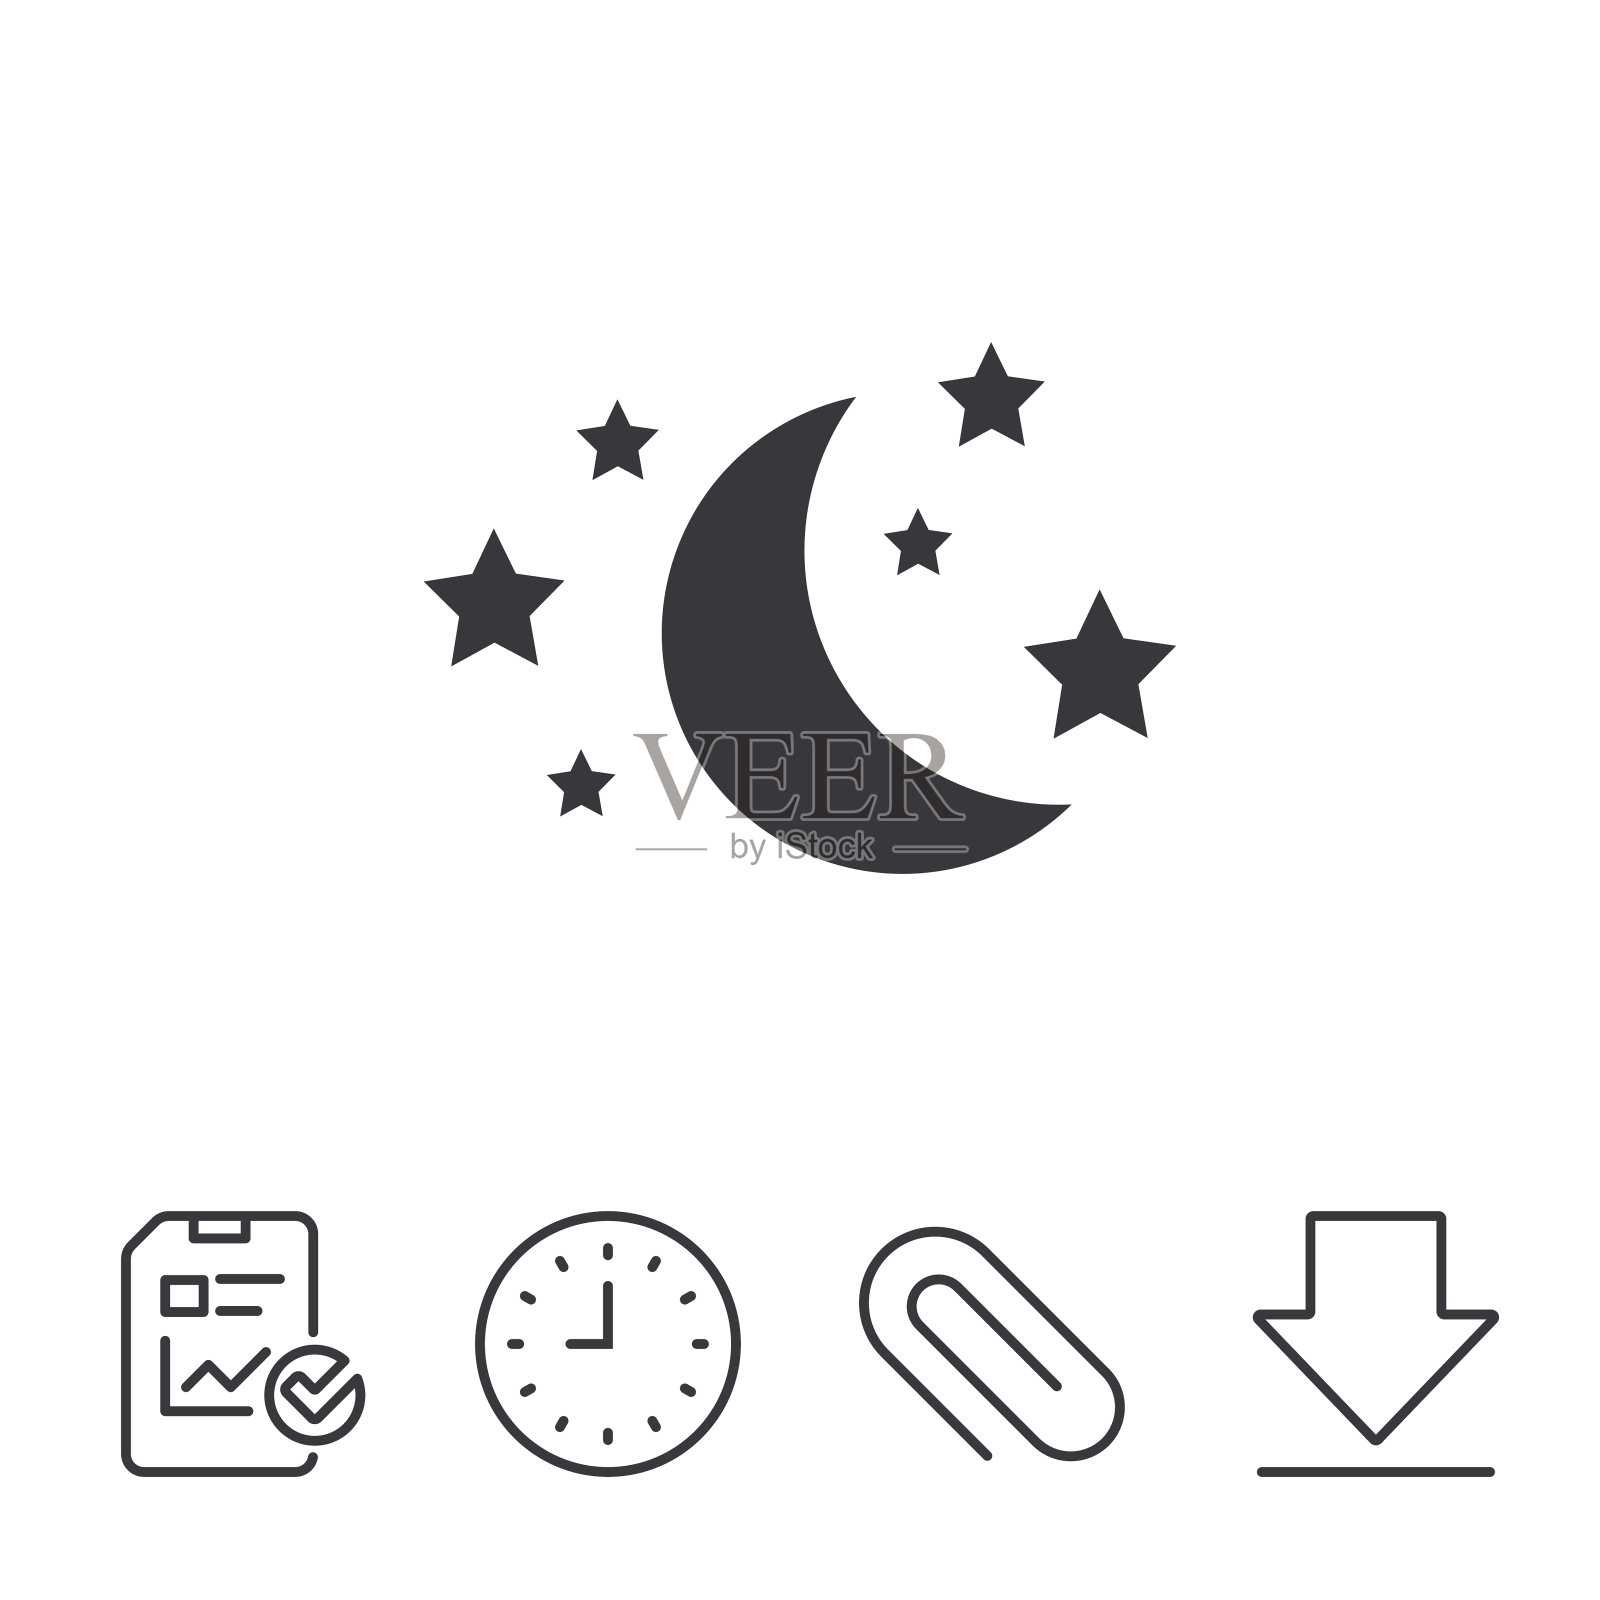 月亮和星星是标志。睡眠的梦想的象征。图标素材